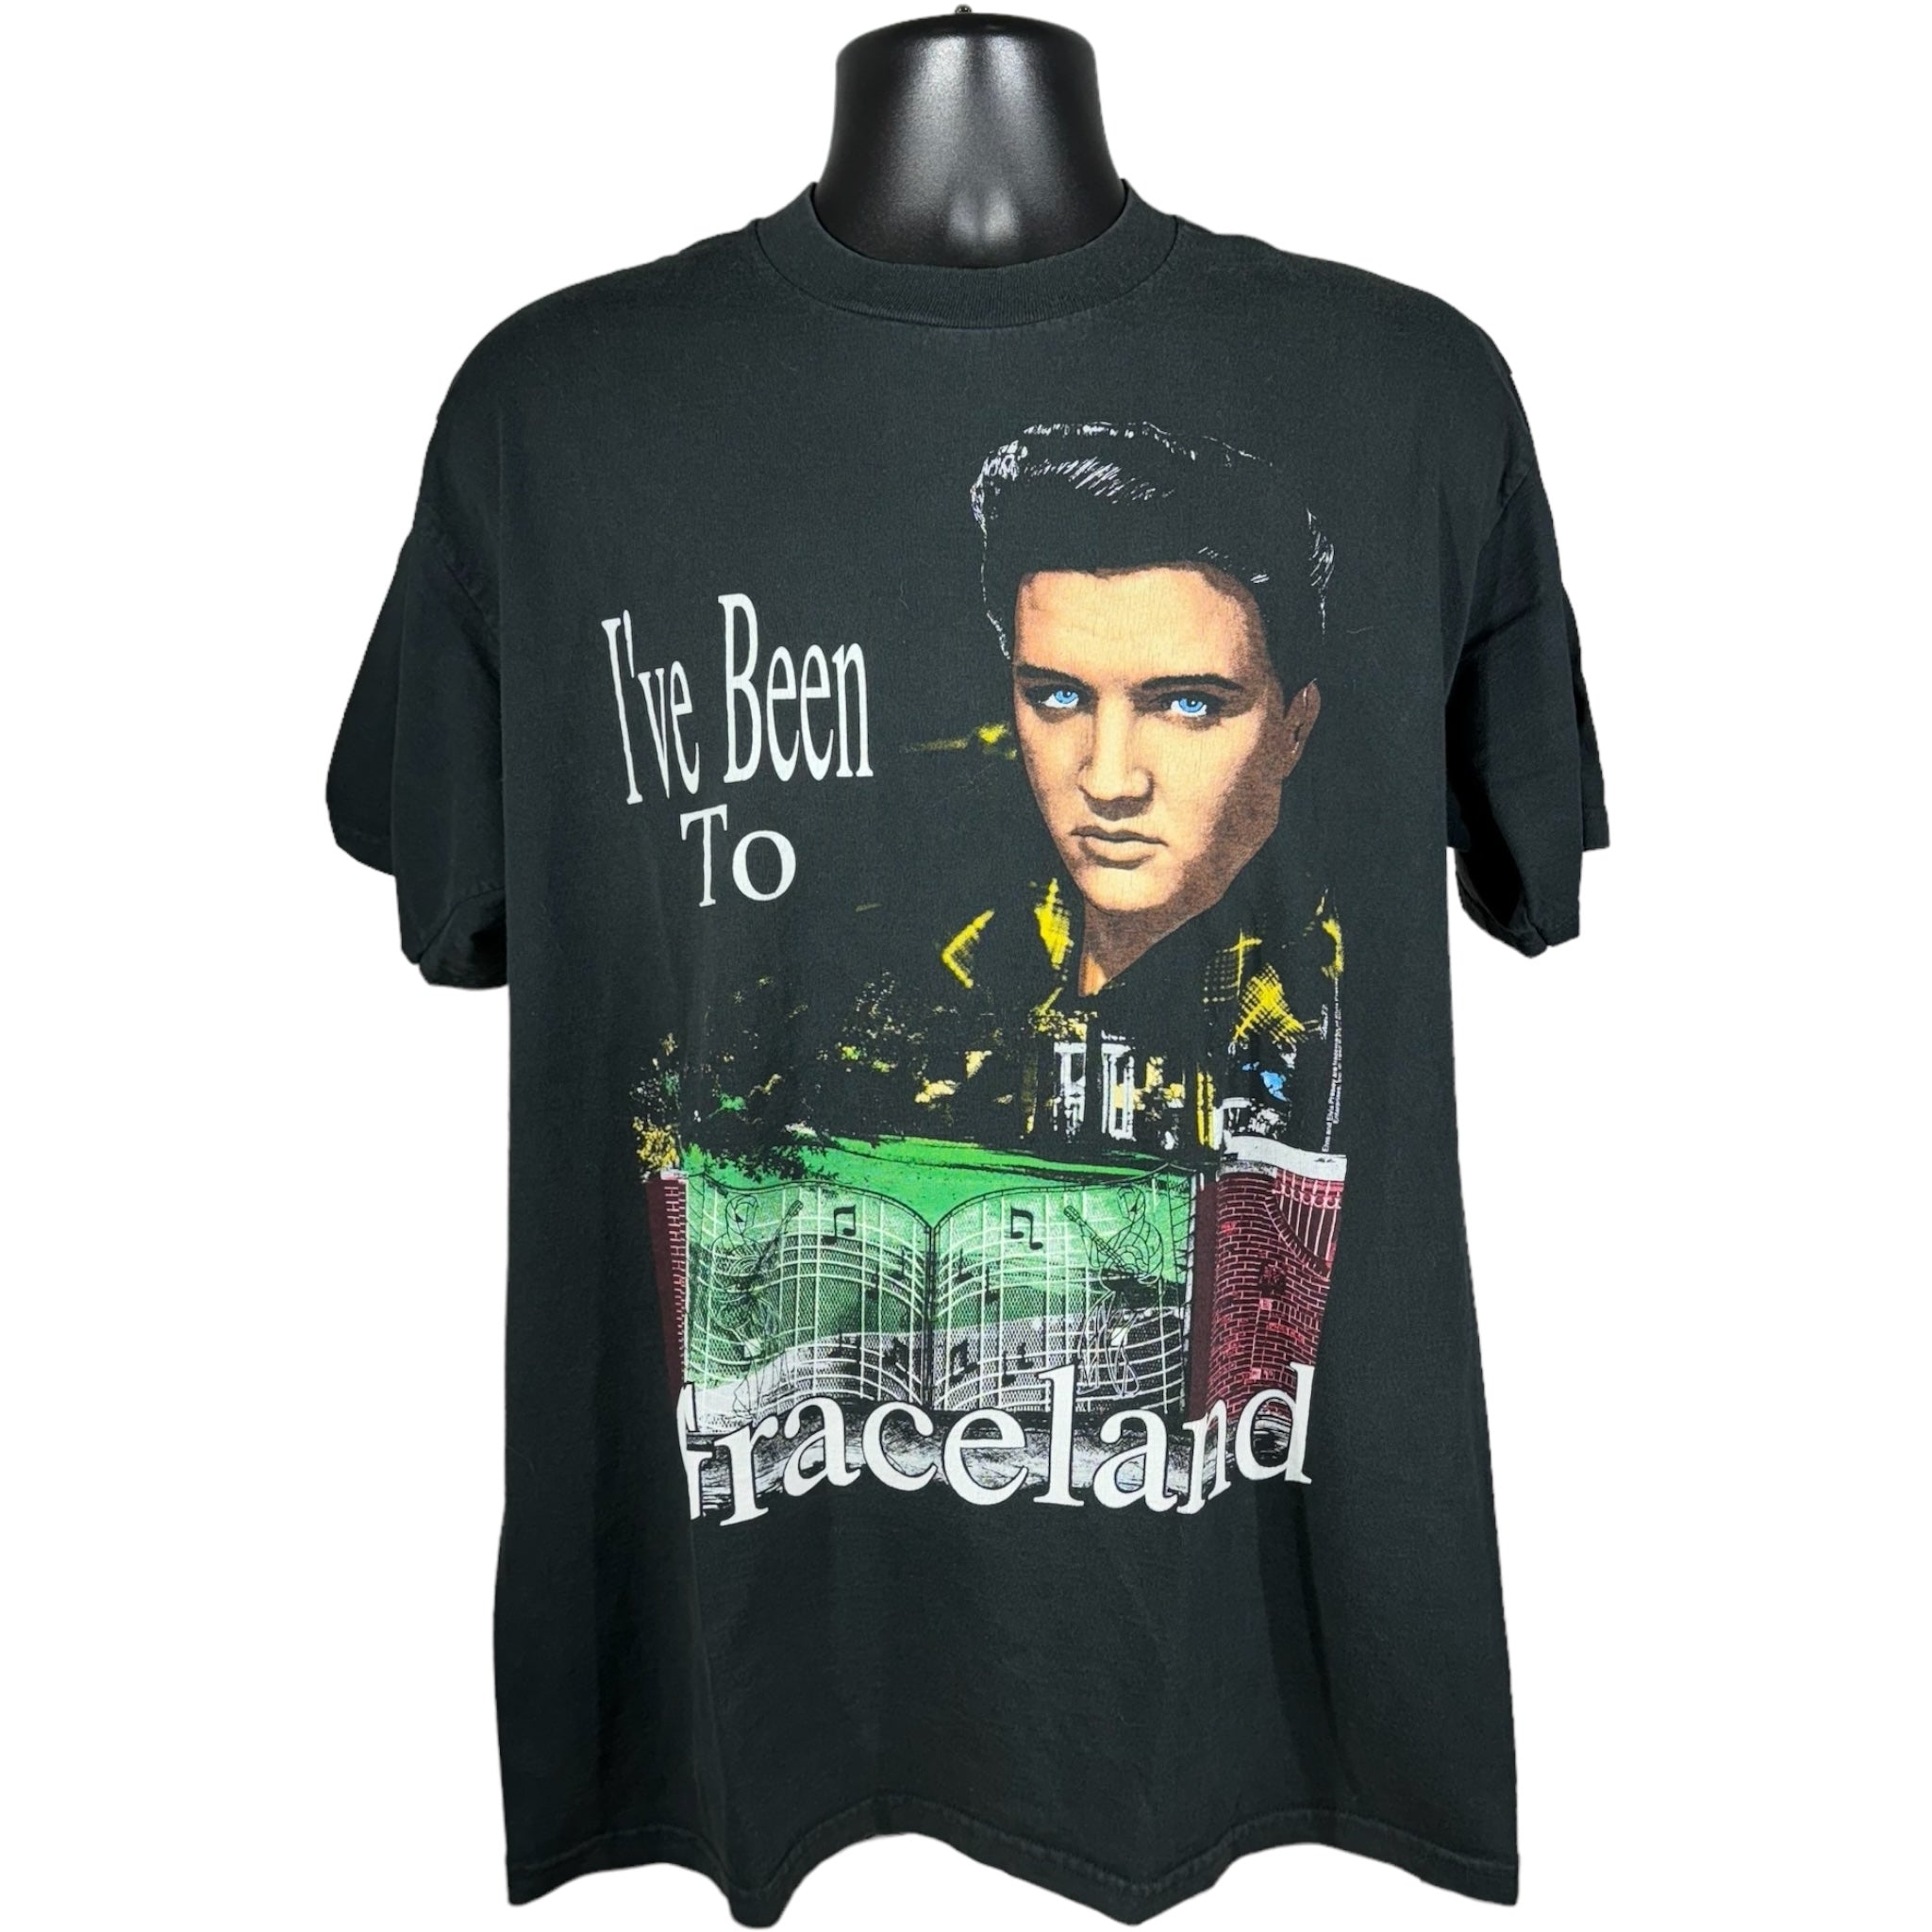 Vintage Elvis Presley "I've Been To Graceland" Tee